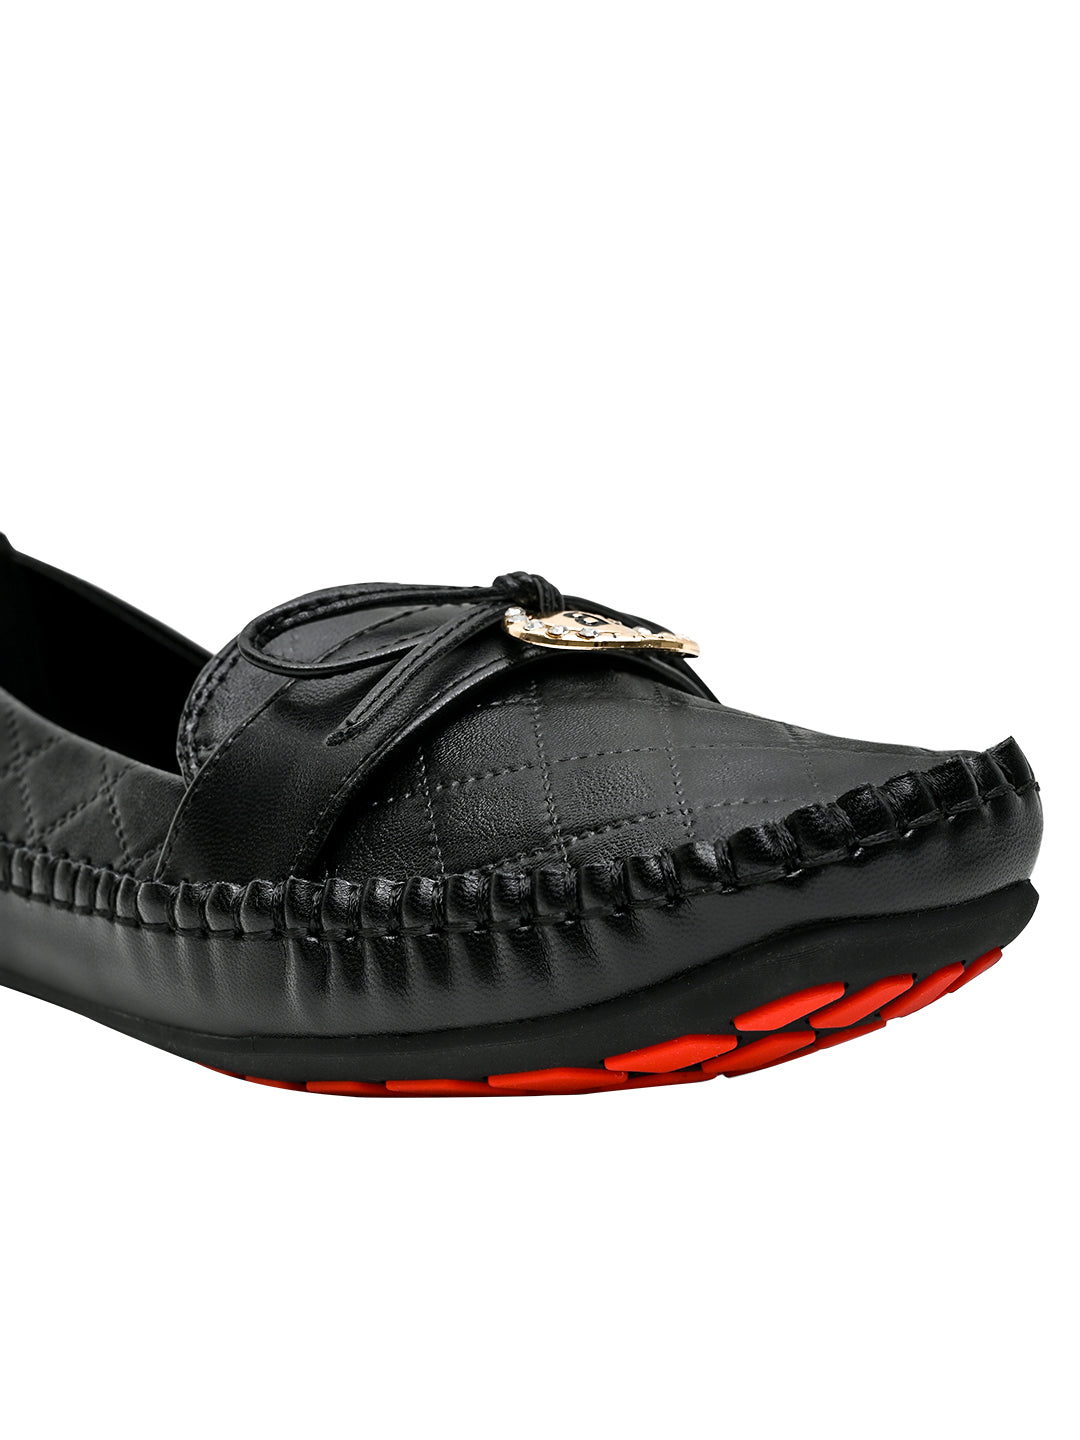 Footwear, Women Footwear, Black Loafers